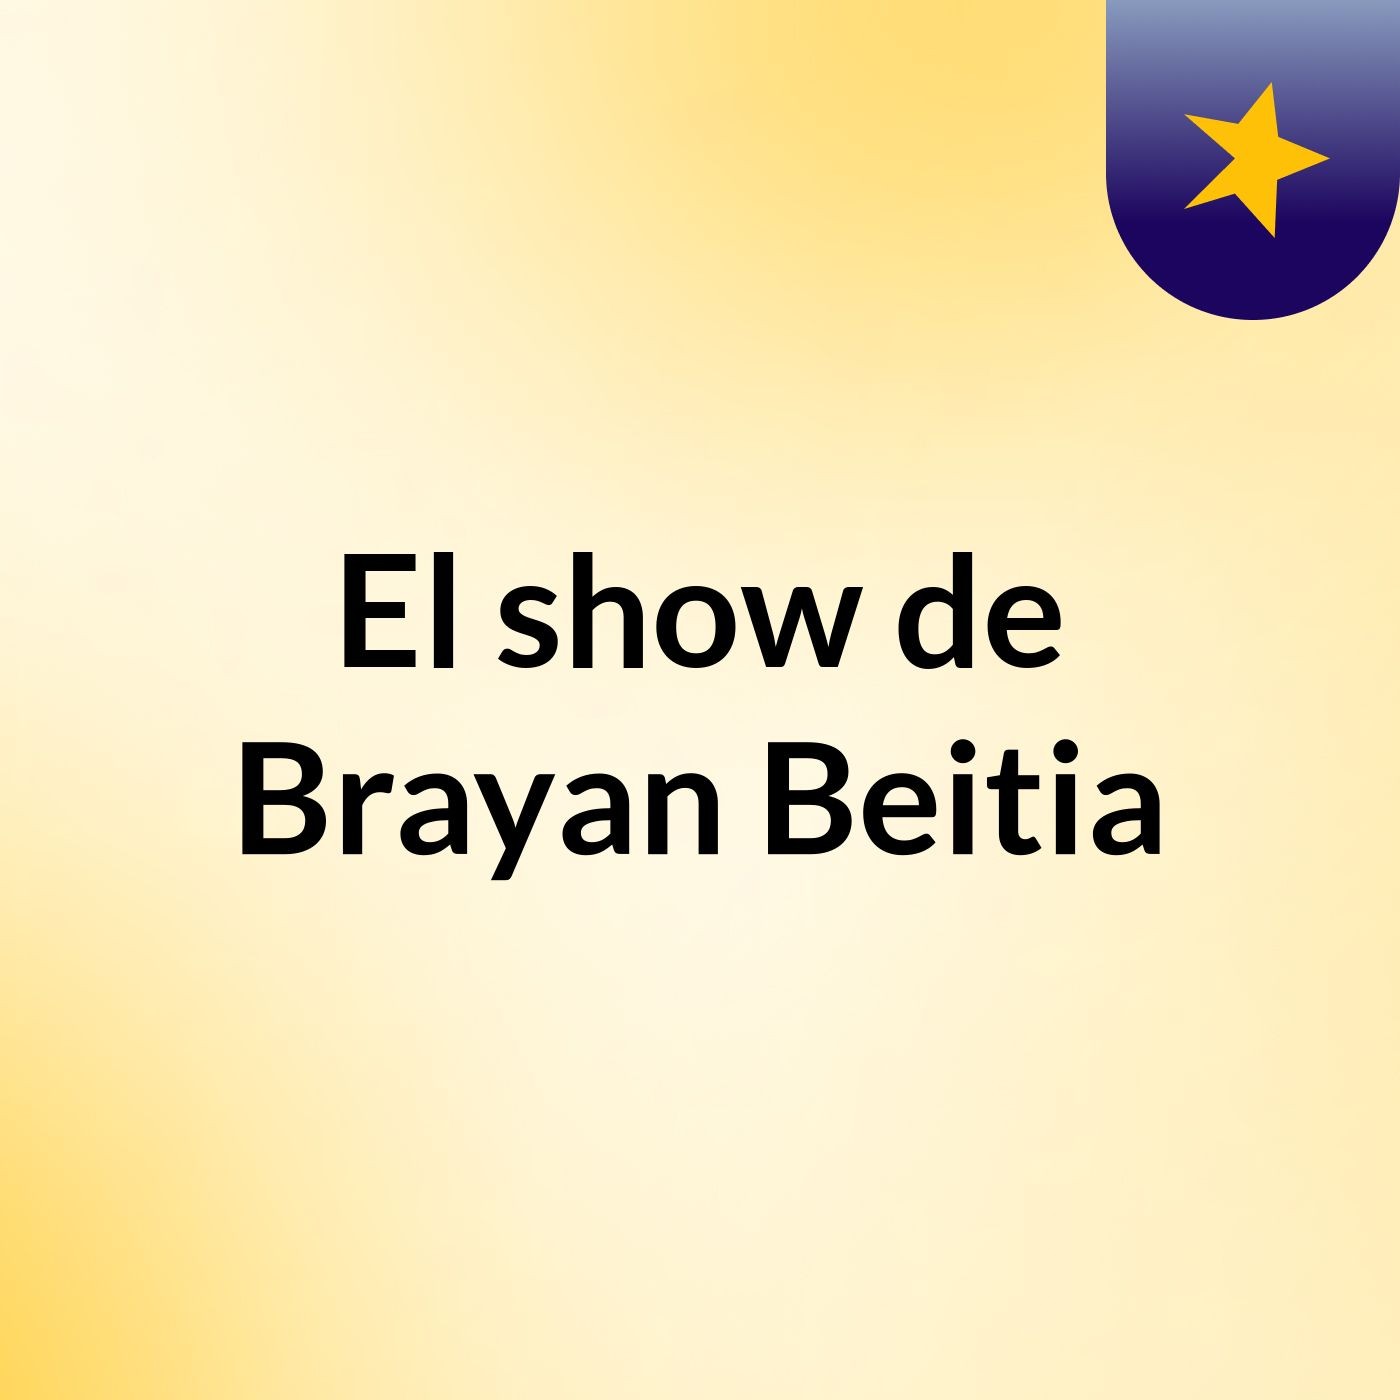 El show de Brayan Beitia